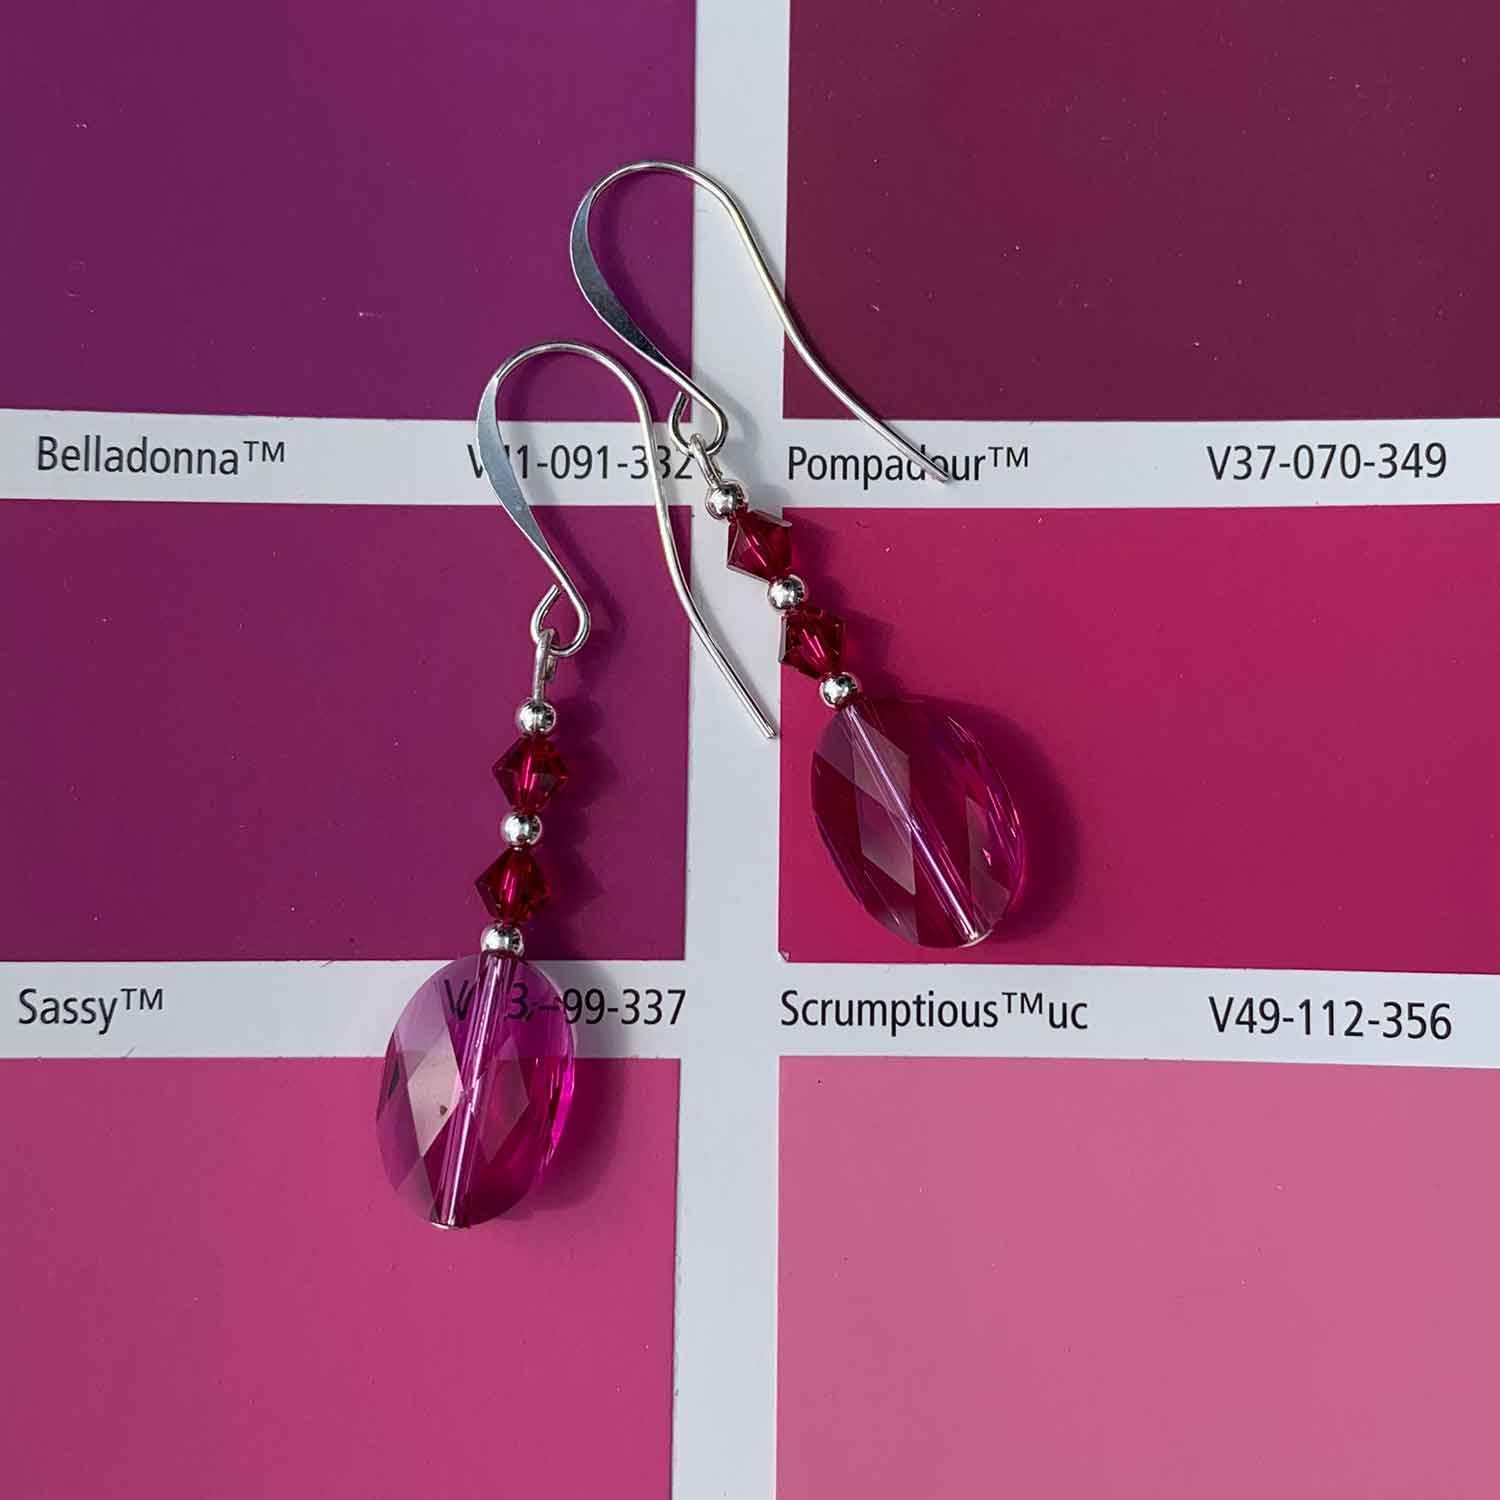 frenelle Jewellery earrings pink silver drop